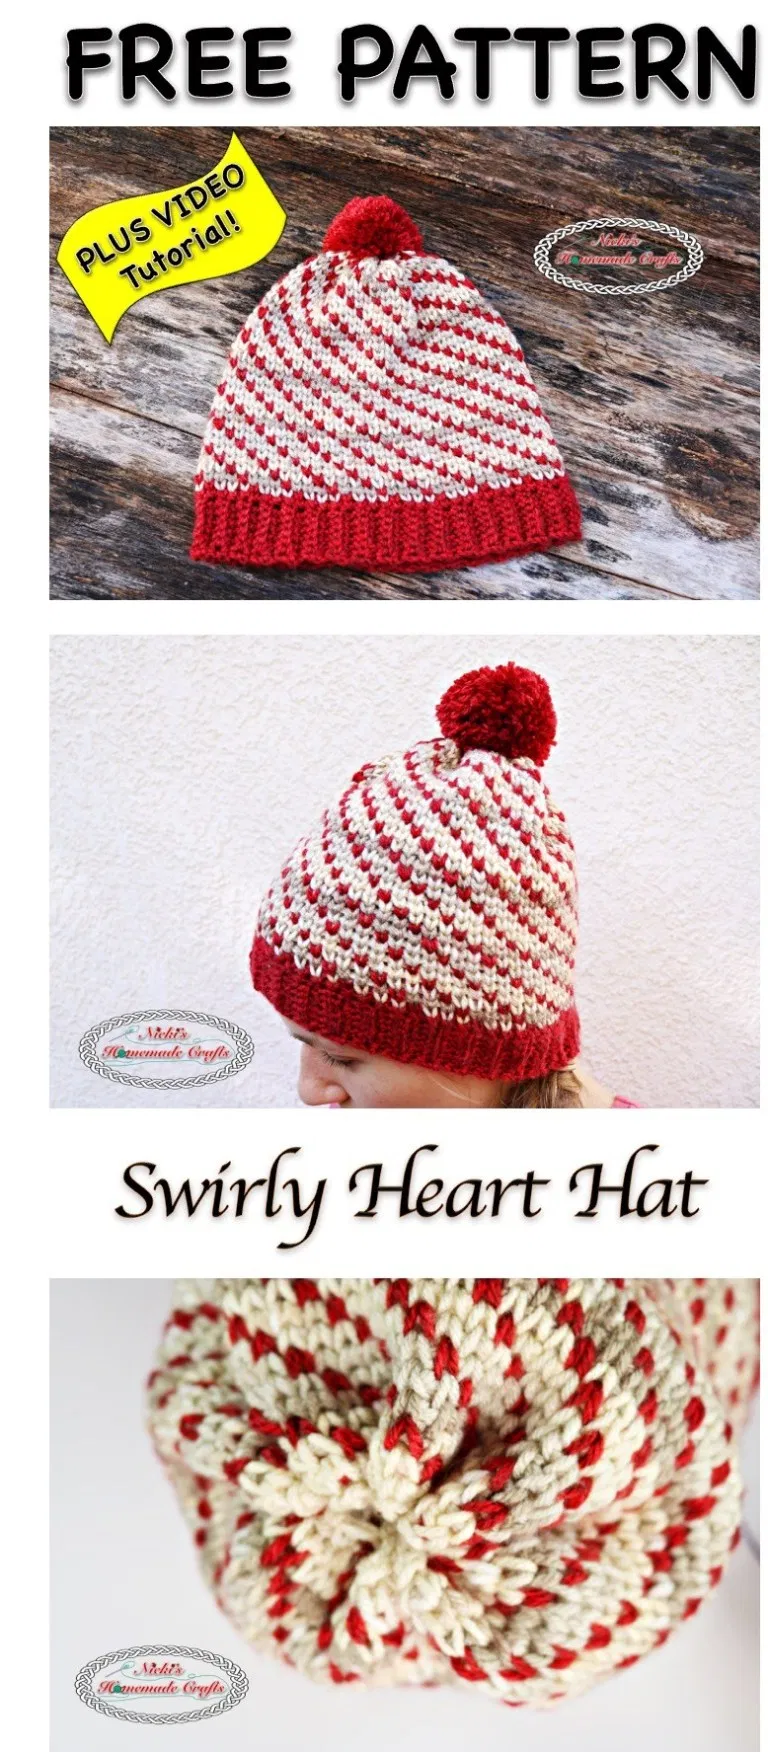 Swirly-Heart-Hat-Free-Crochet-Pattern.png